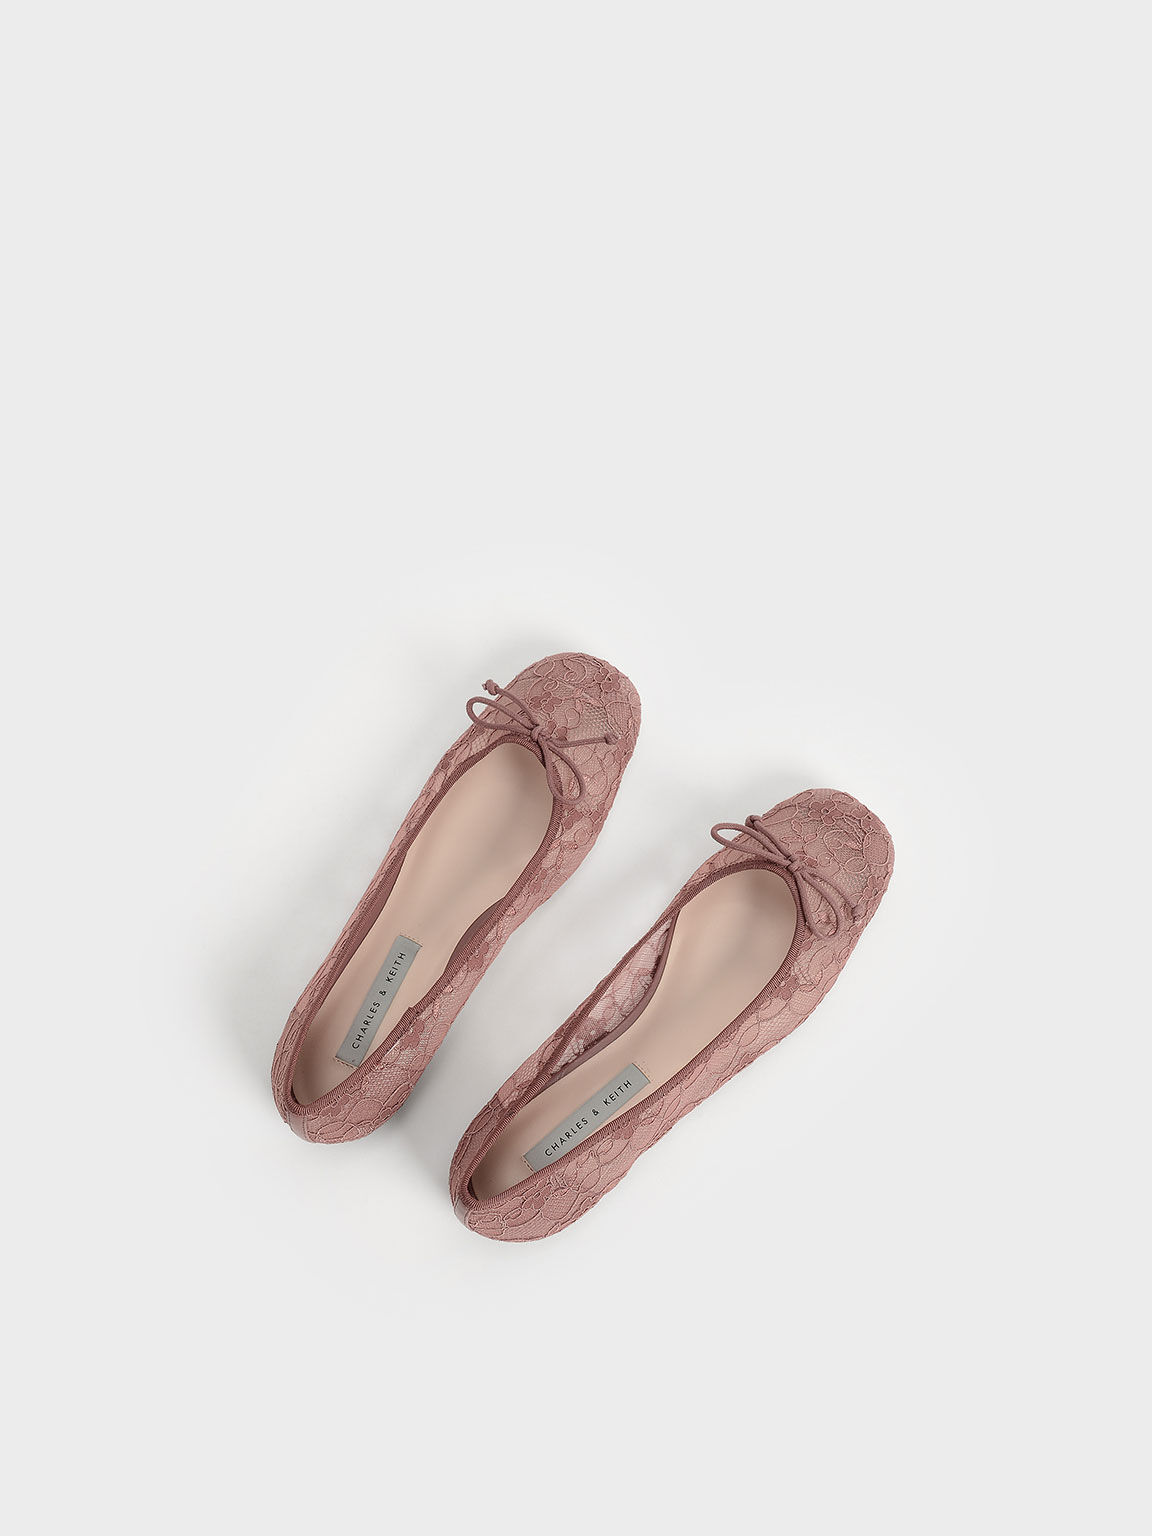 Bow-Tie Lace Ballerina Flats, Mauve, hi-res